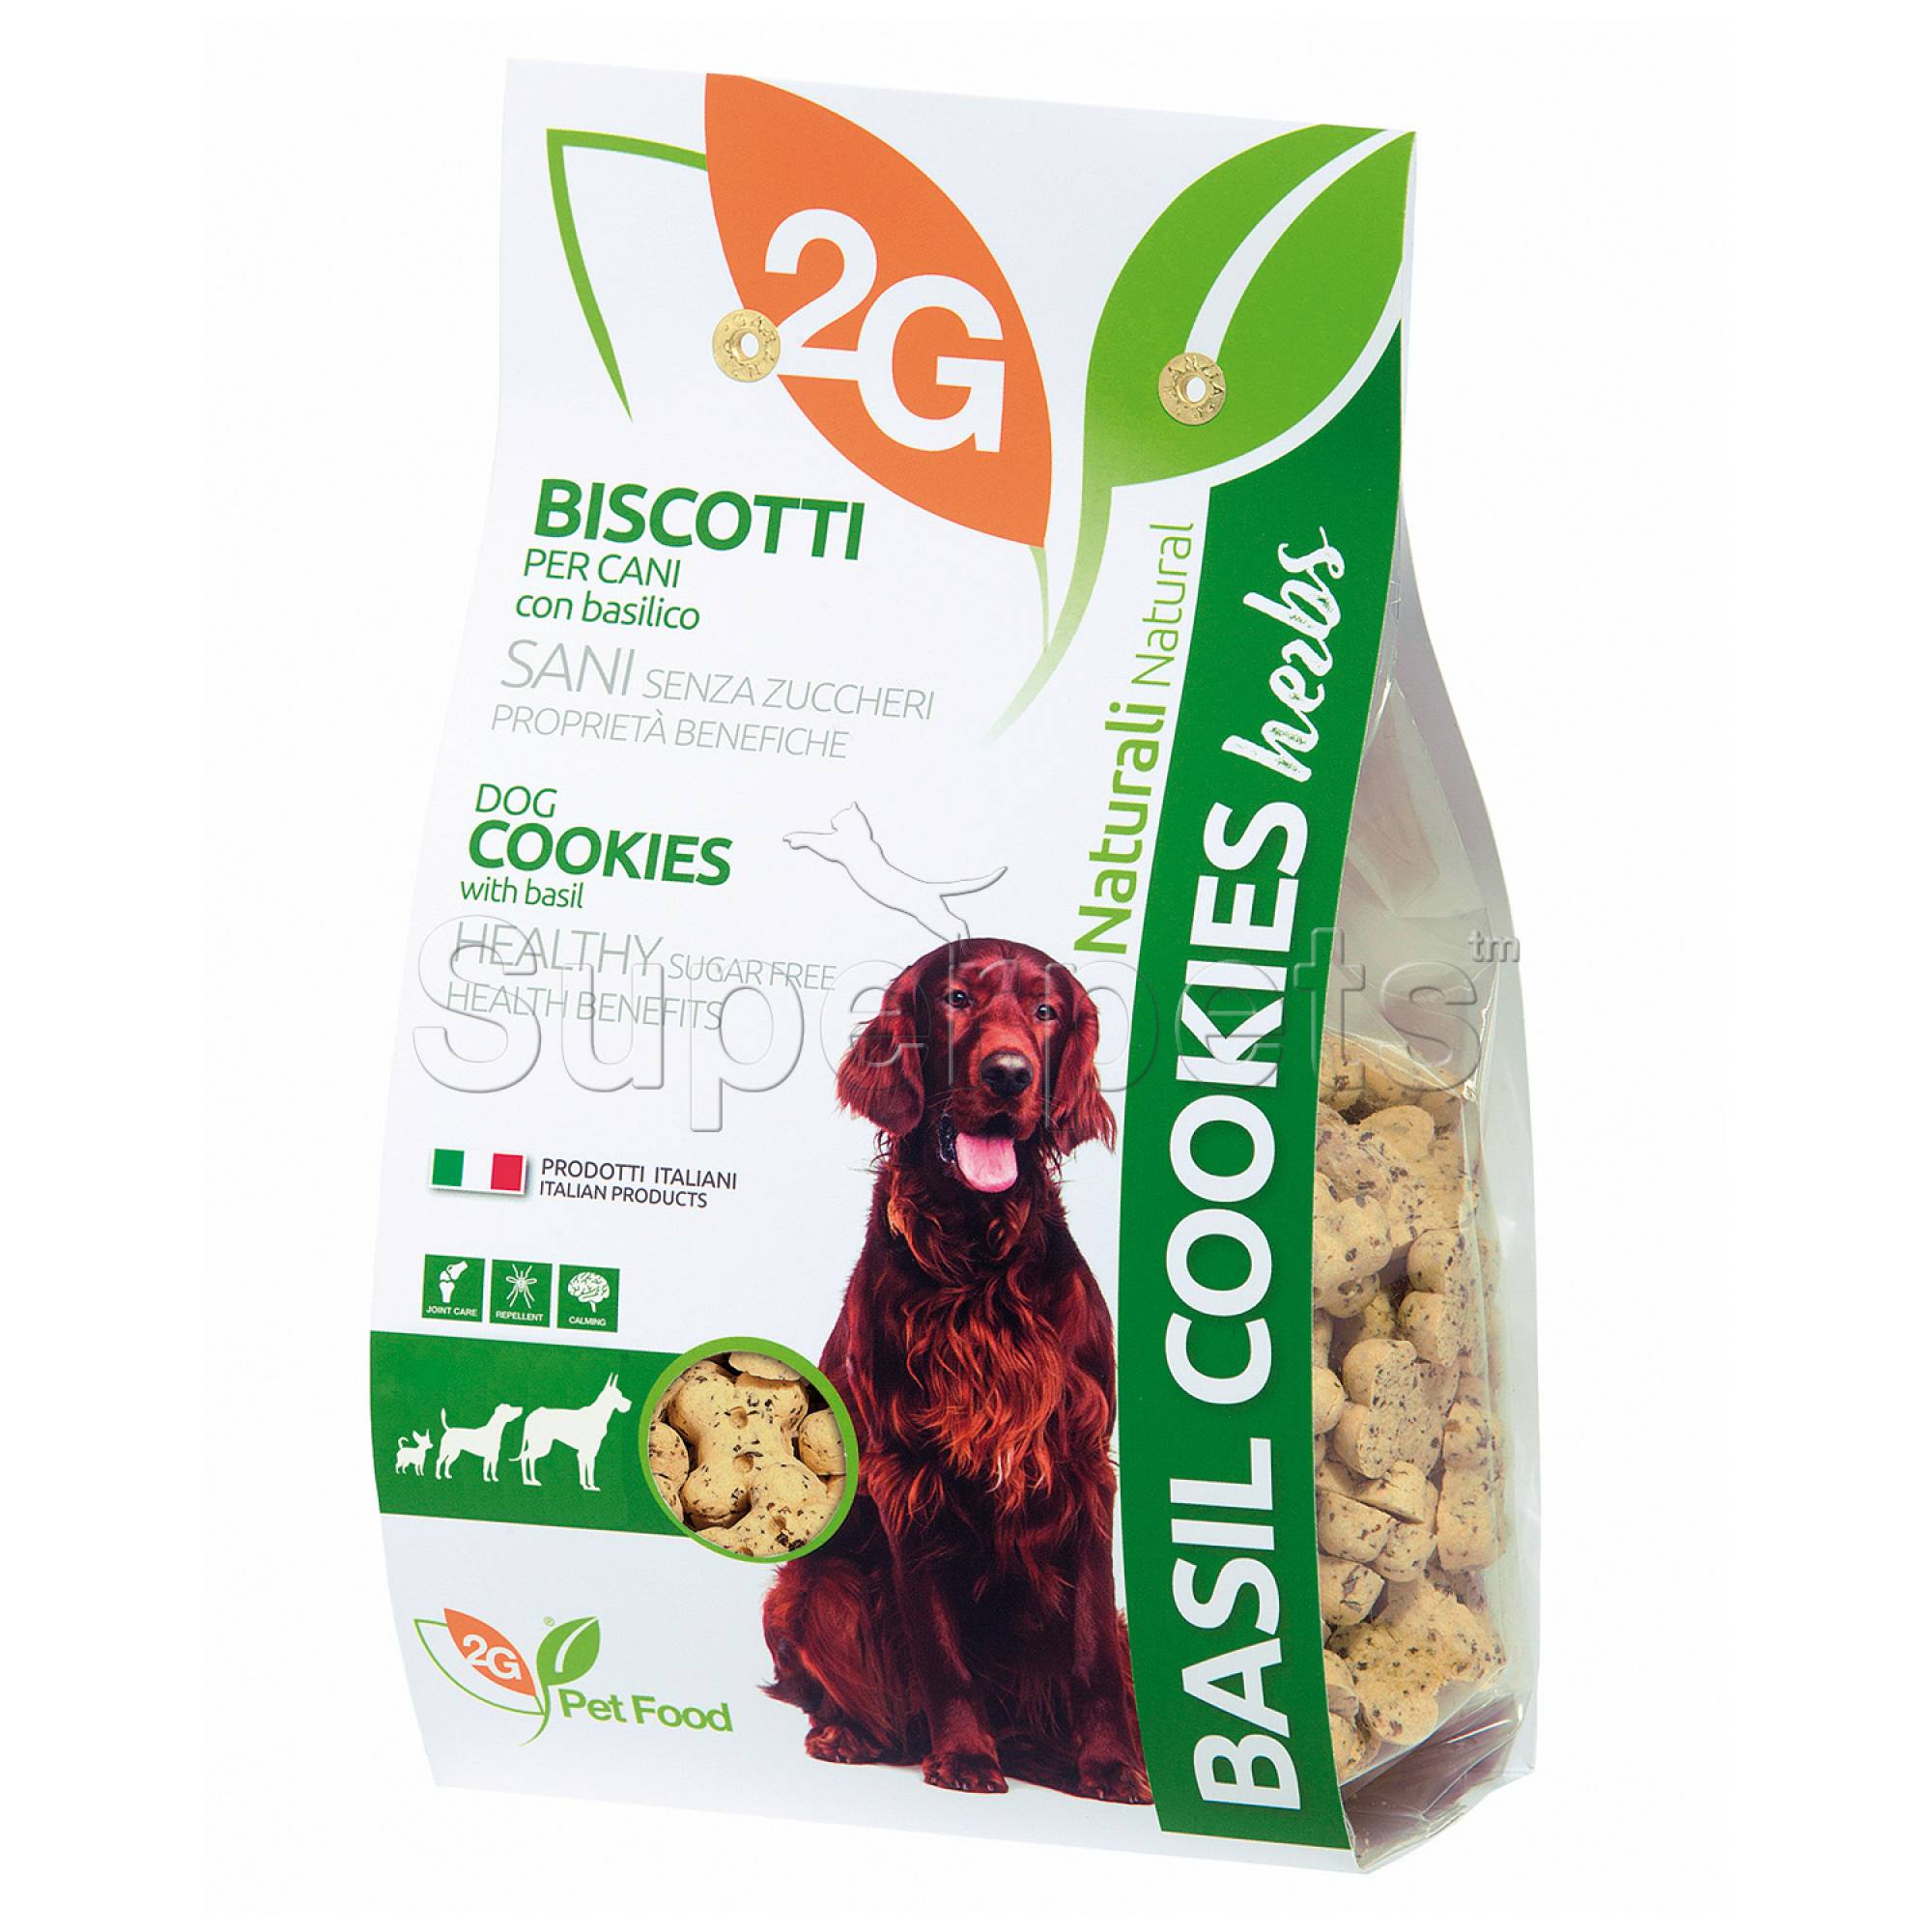 2G Pet Food - Basil Dog Cookies 350g